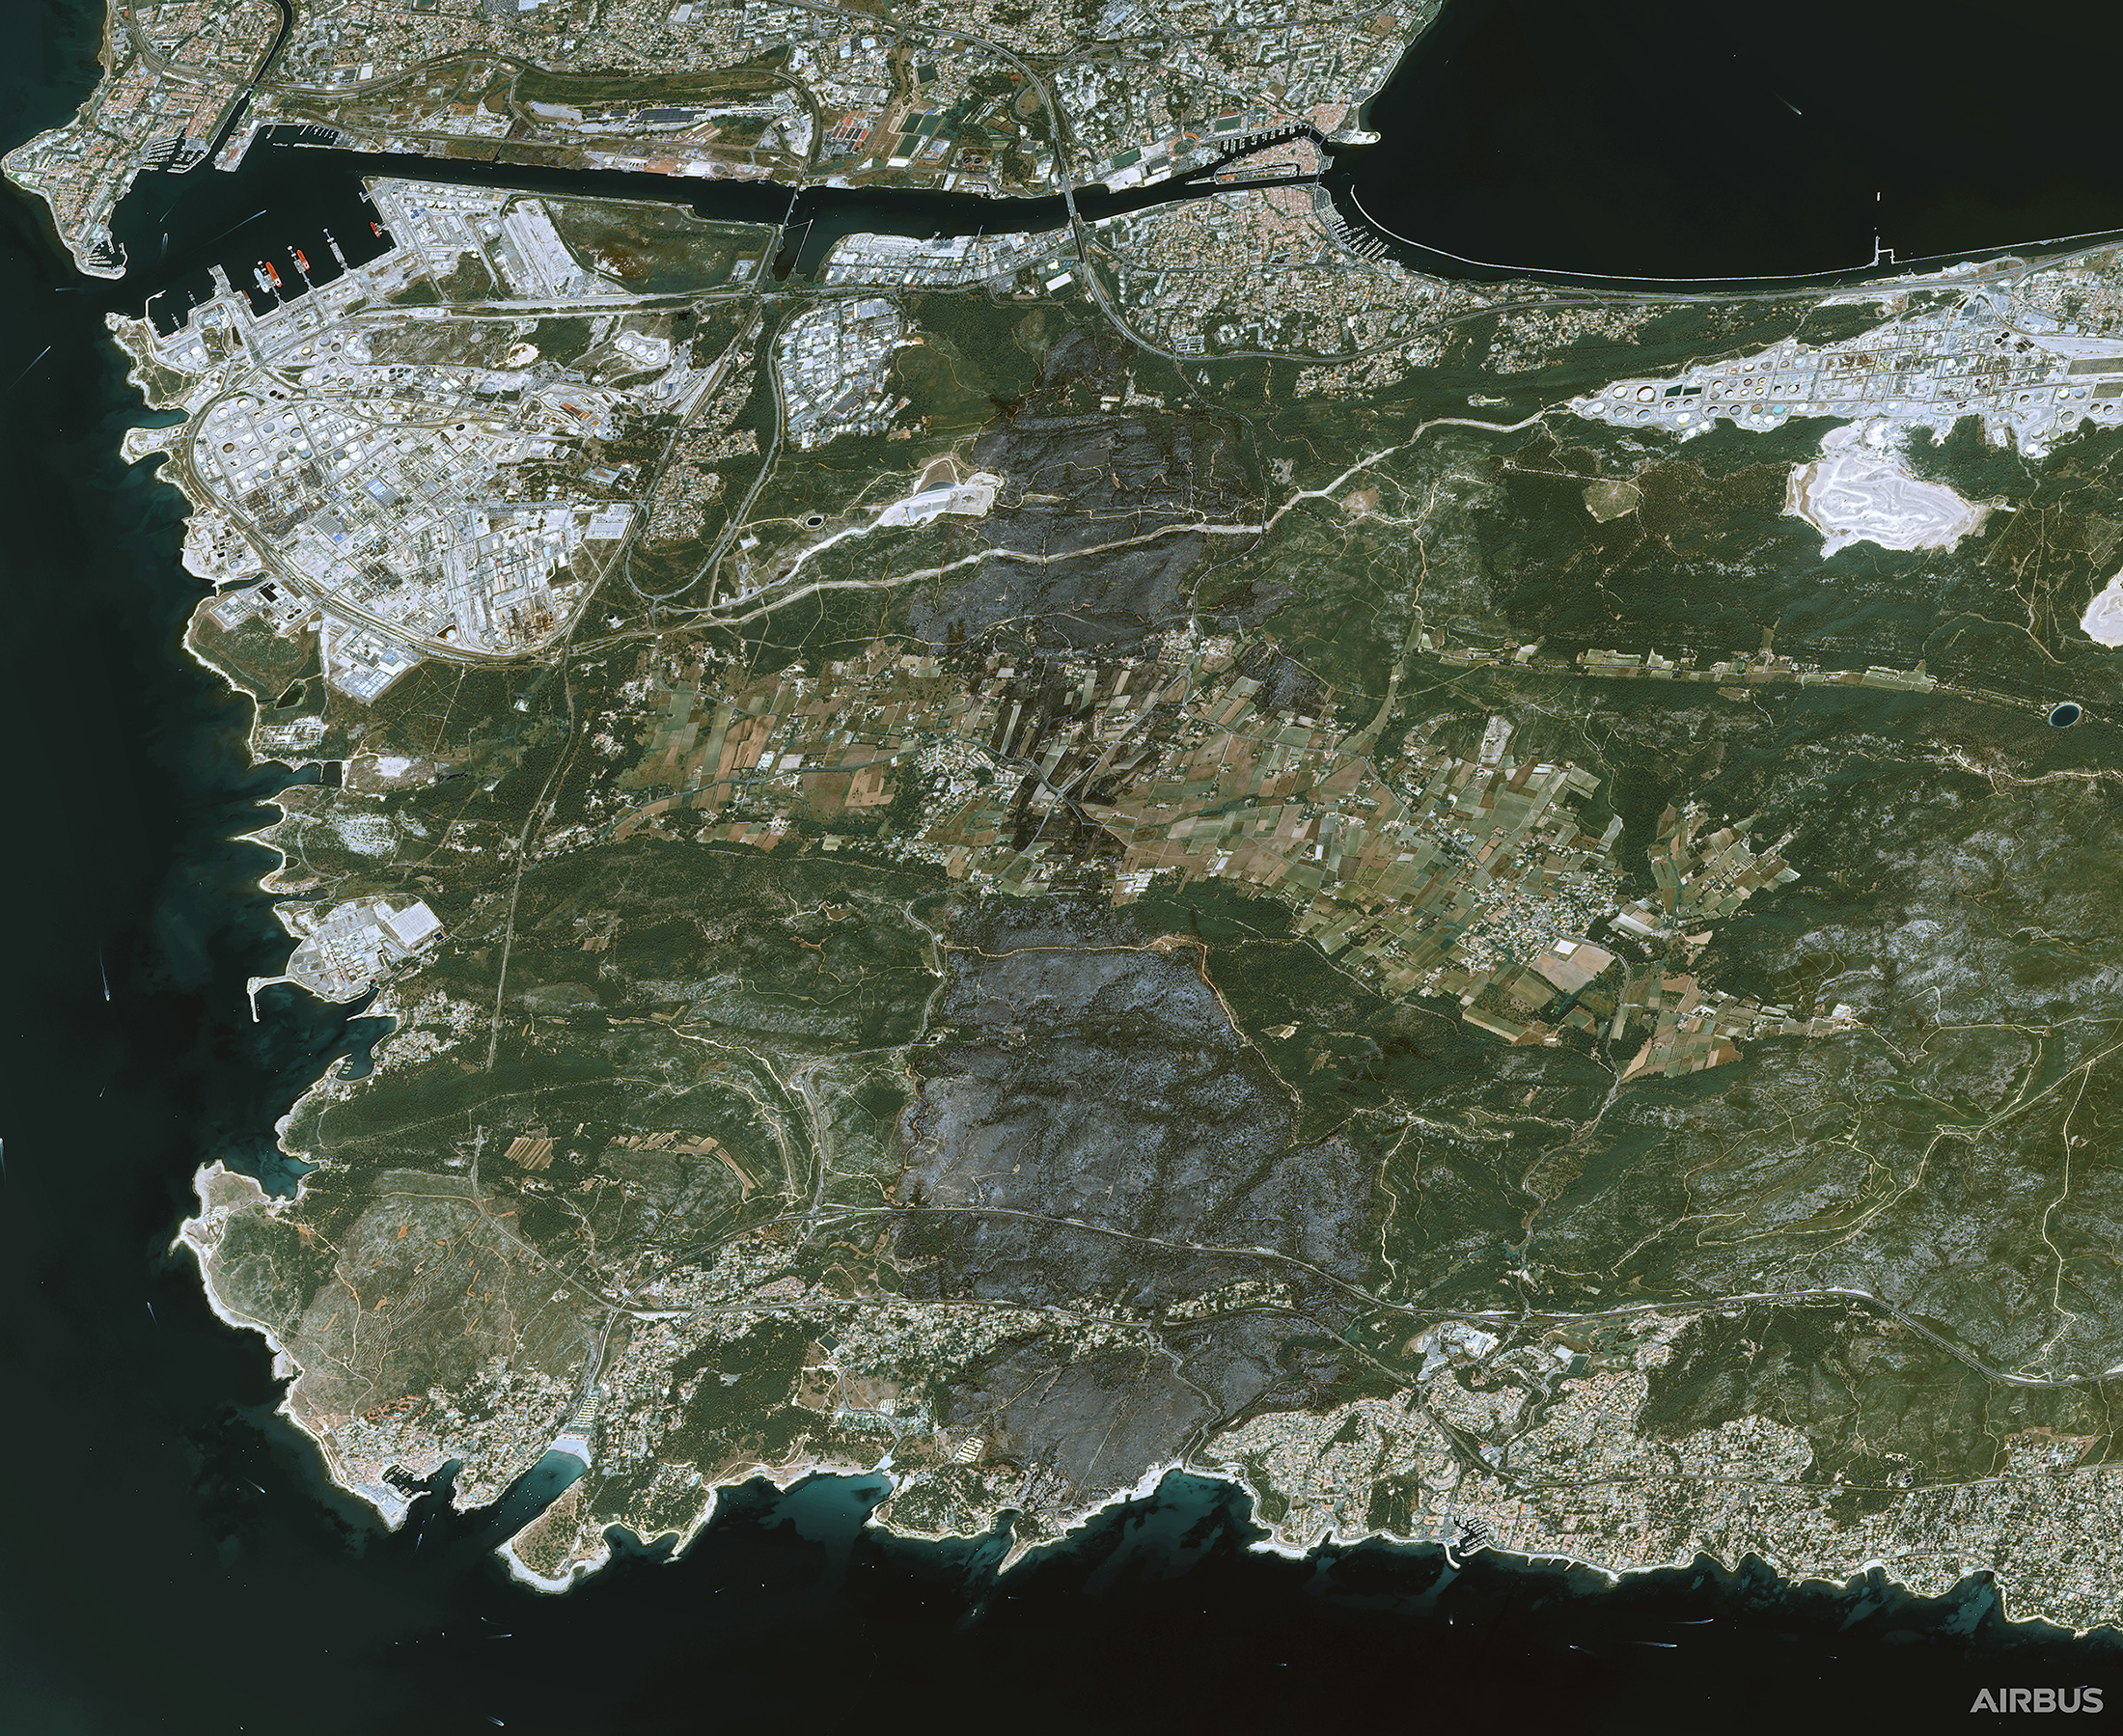 Image satellite de la ville de Martigues (en haut) et des plages du Verdon, de Sainte-Croix et Crique notamment (au bas de l'image). Cette image provient d'un des satellites très haute résolution Pléiades fabriqués et opérés par Airbus pour le compte du Cnes. © Cnes 2020, Distribution Airbus DS 